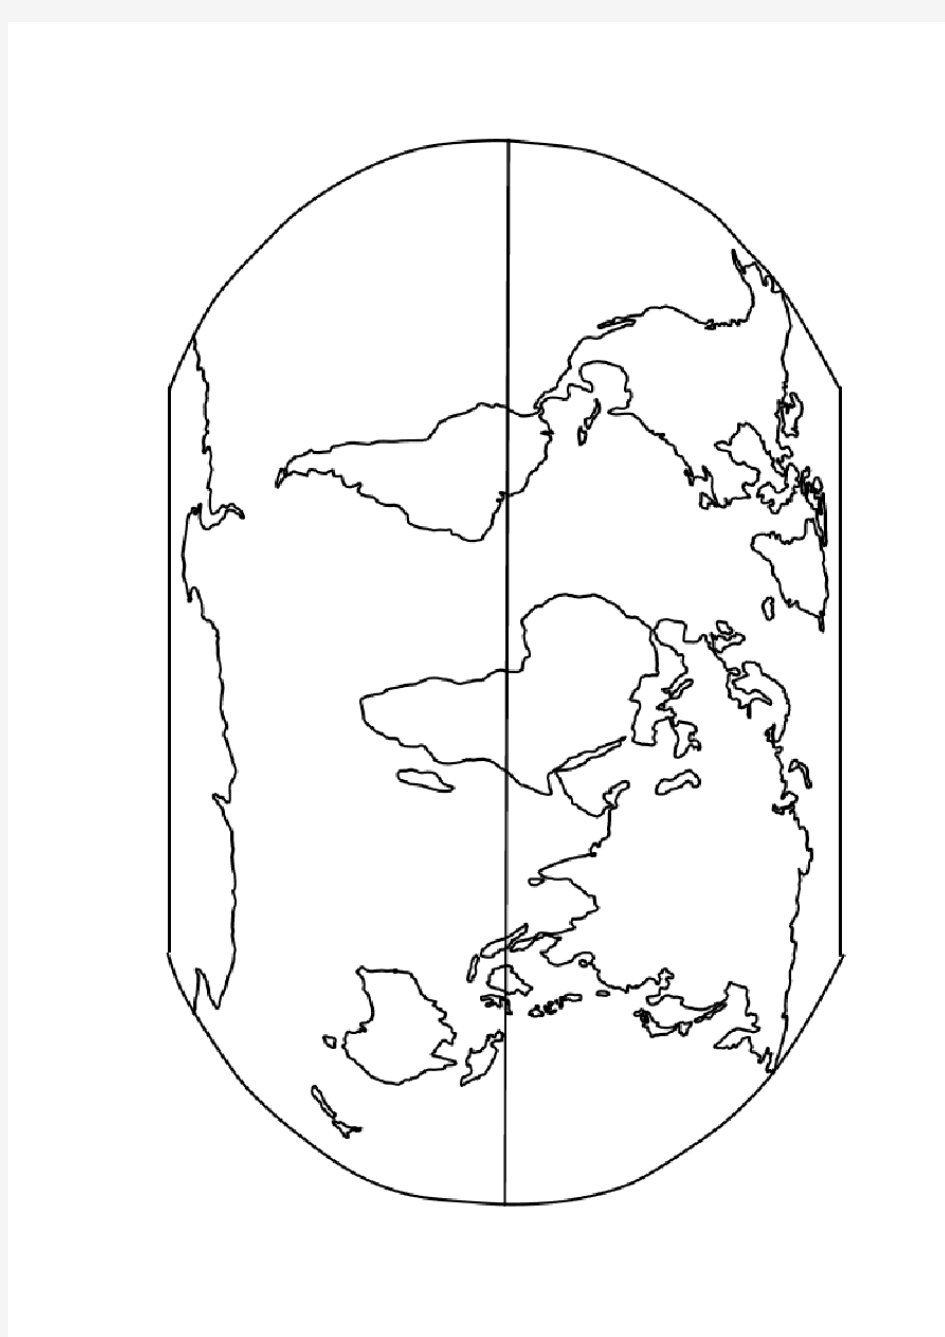 世界地图空白图(高清版)23604解析